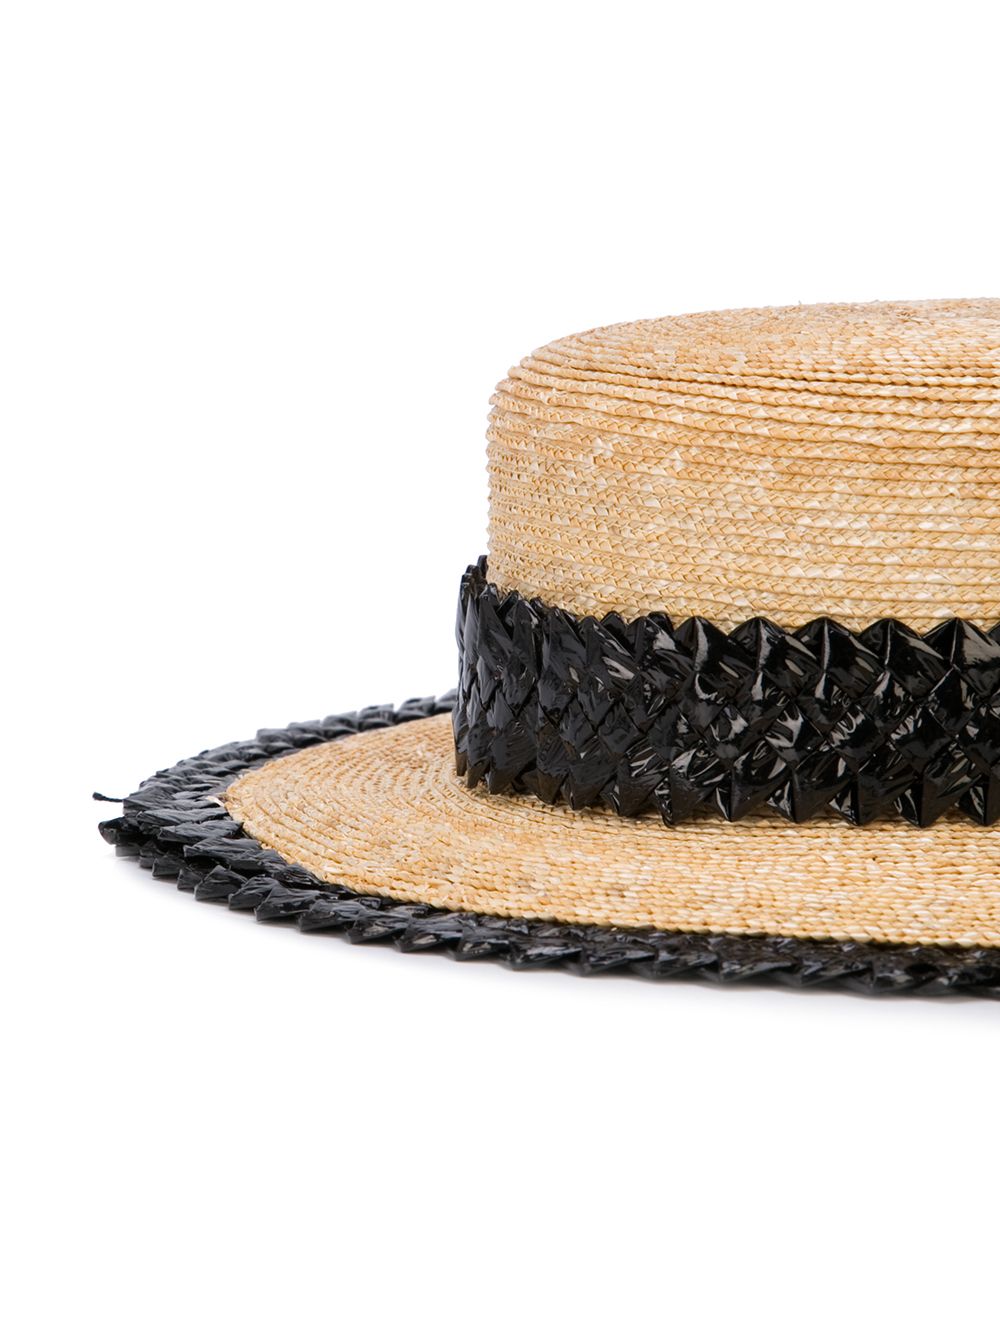 фото Gigi burris millinery соломенная шляпа с узкими полями